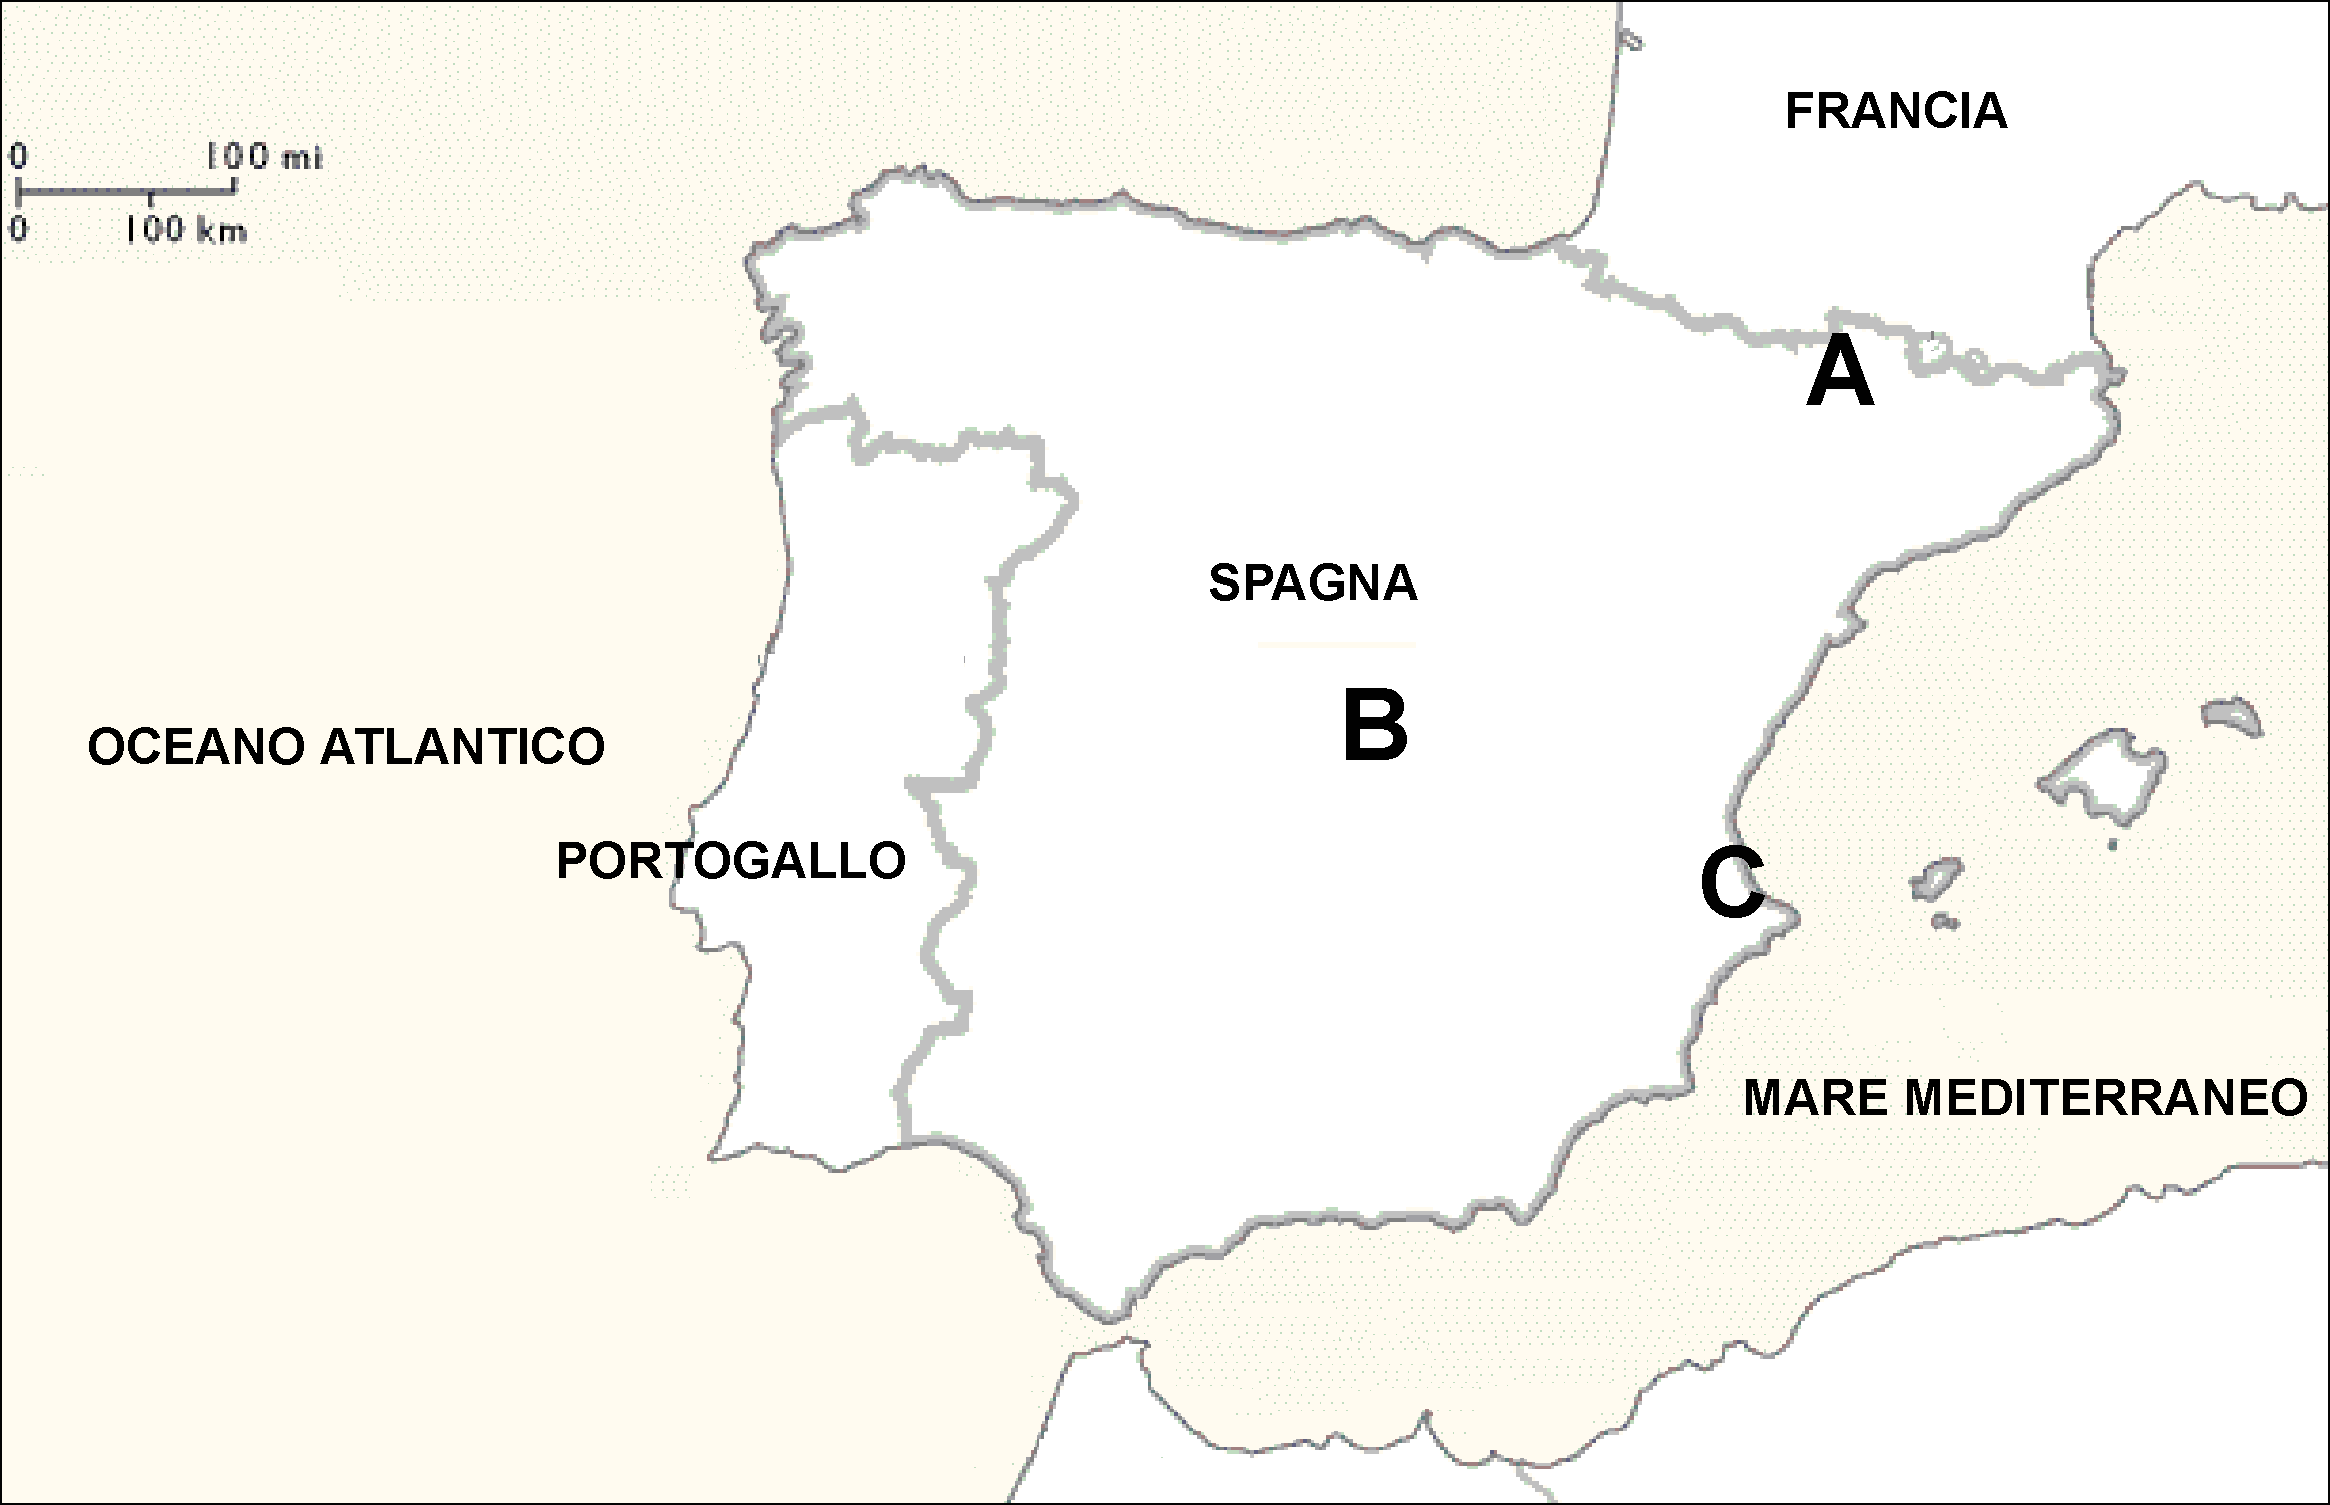 M061-501-1-1I 15 33. La Spagna è caratterizzata da grandi proprietà terriere. Indicate il termine con cui vengono definite, e sulla cartina n. 4, cerchiate la lettera della regione in cui prevalgono.